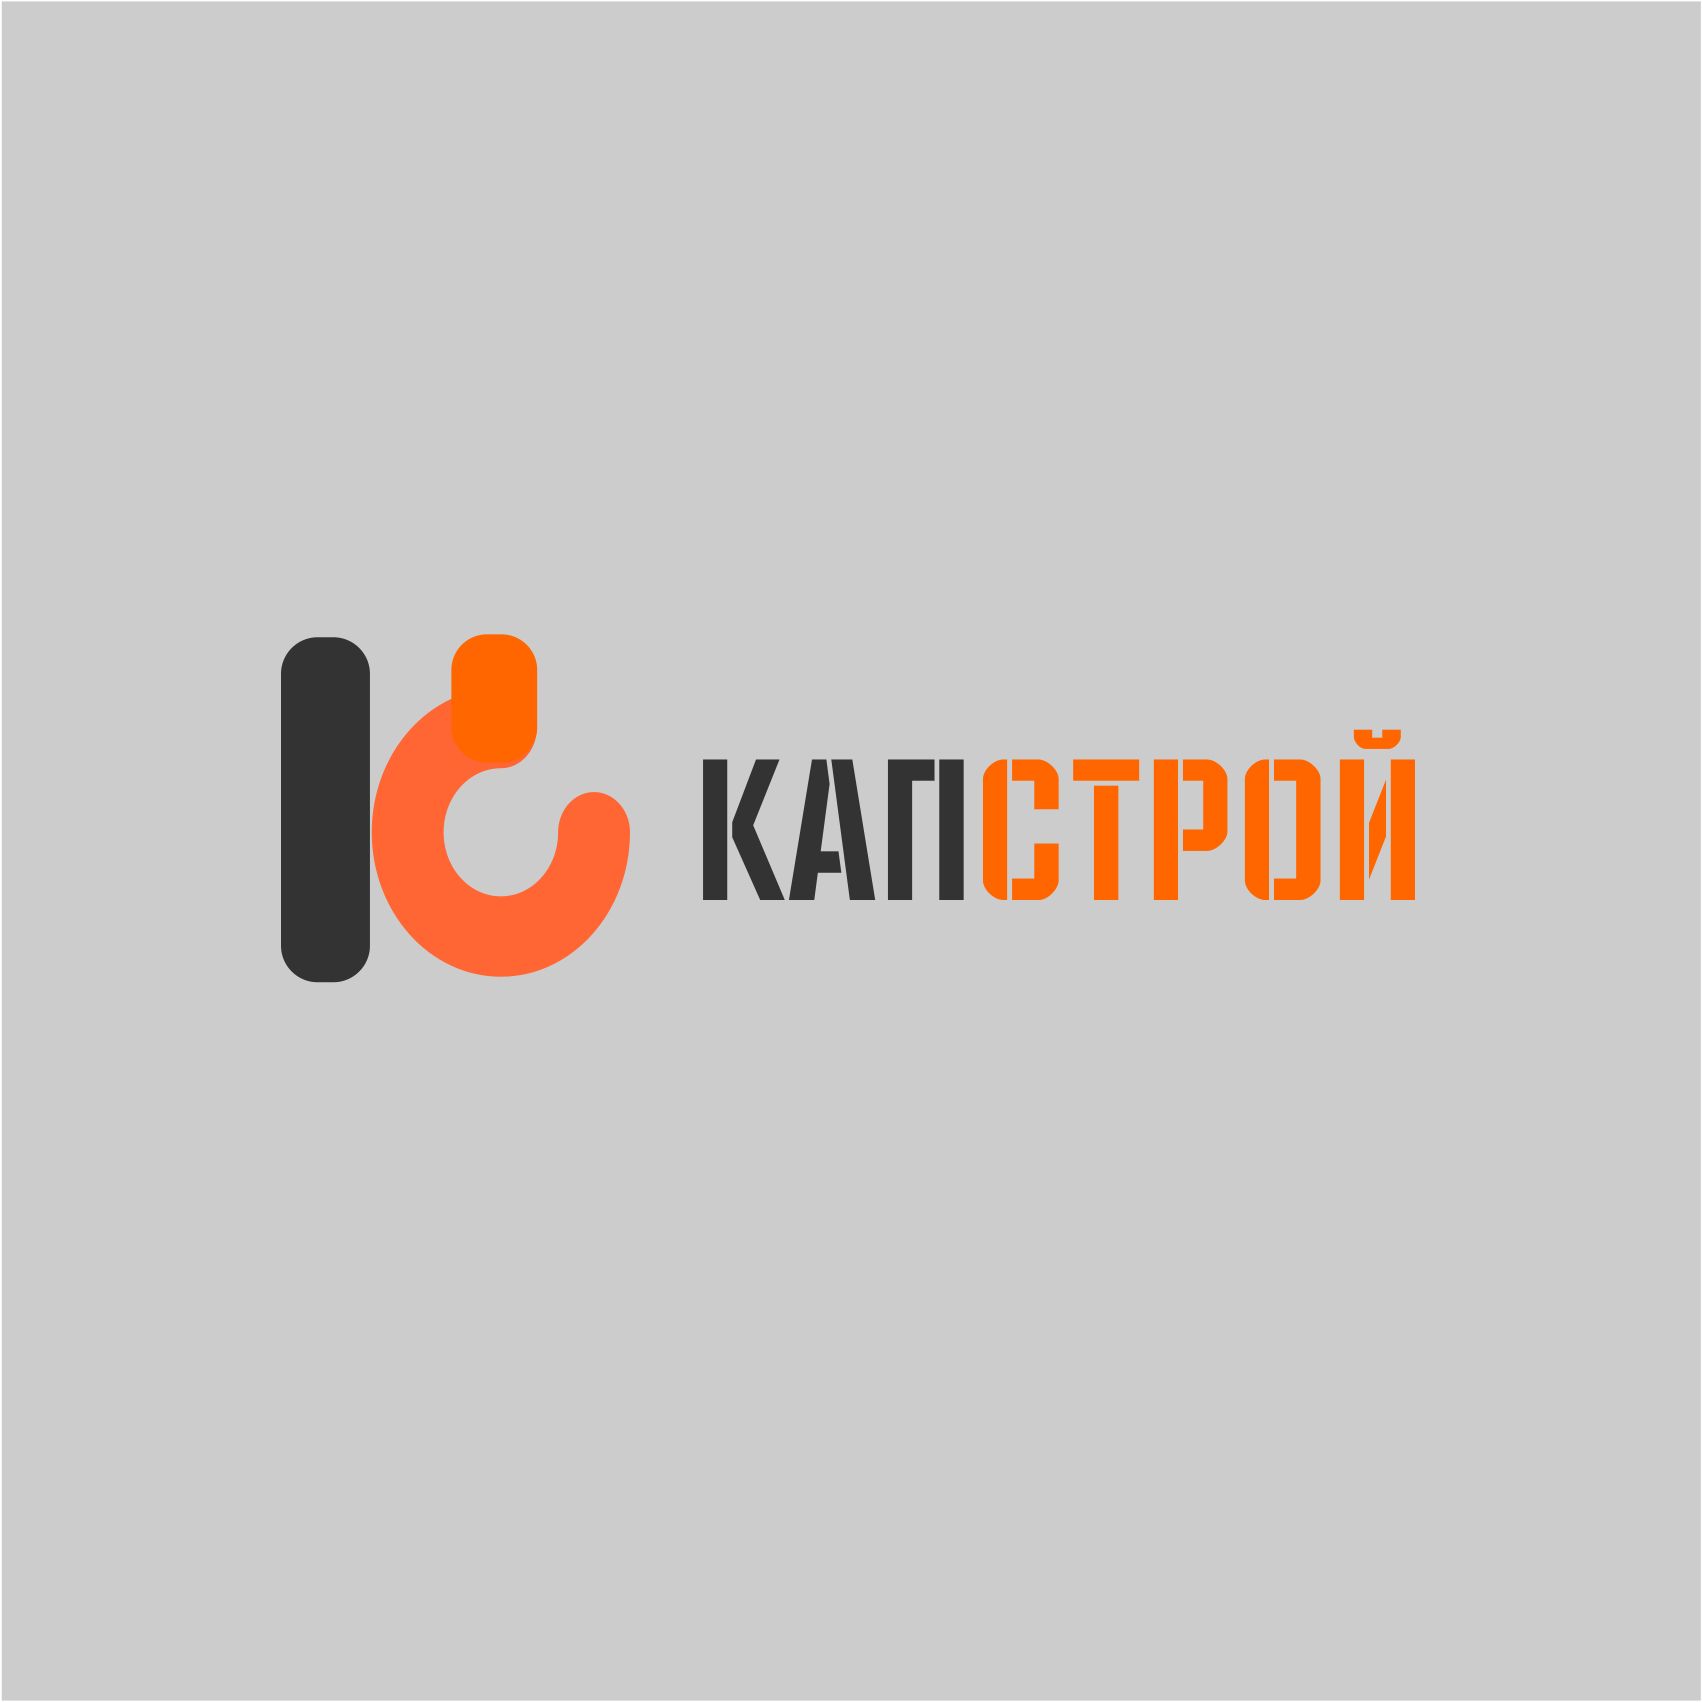 Лого и фирменный стиль для Капстрой  - дизайнер AnatoliyInvito